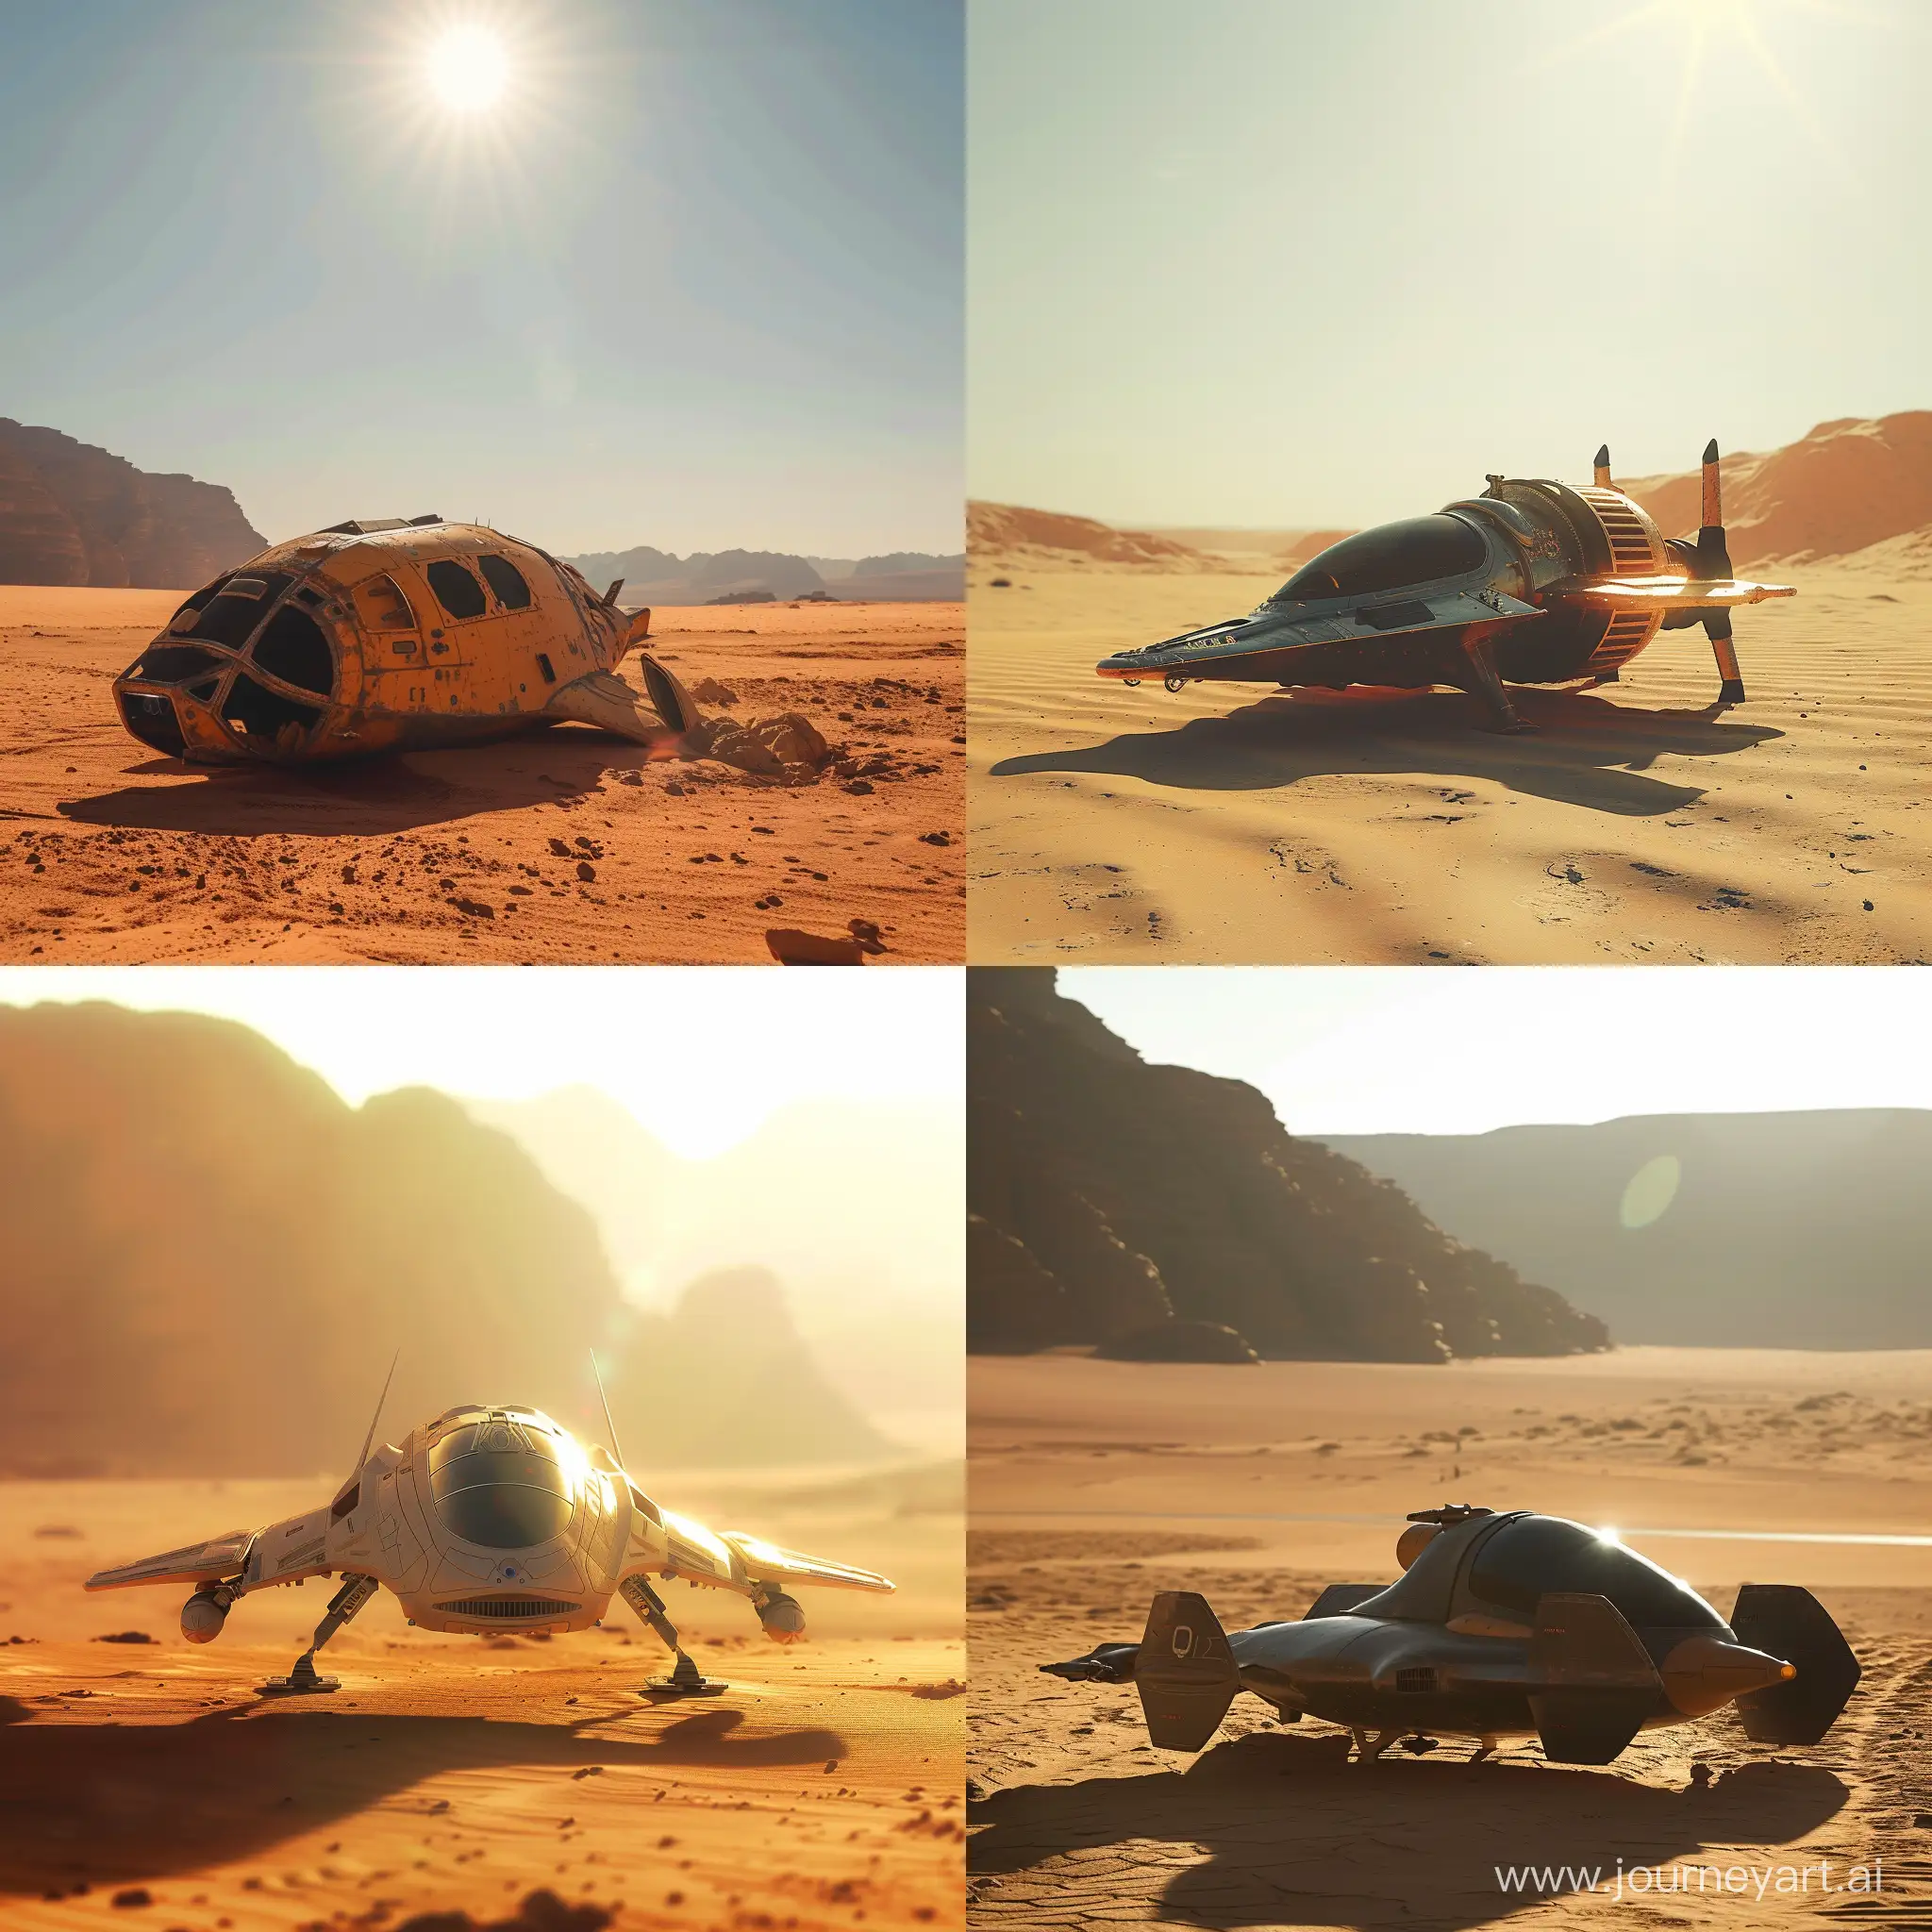 Futuristic-Combat-Spacecraft-Landing-in-Sunlit-Desert